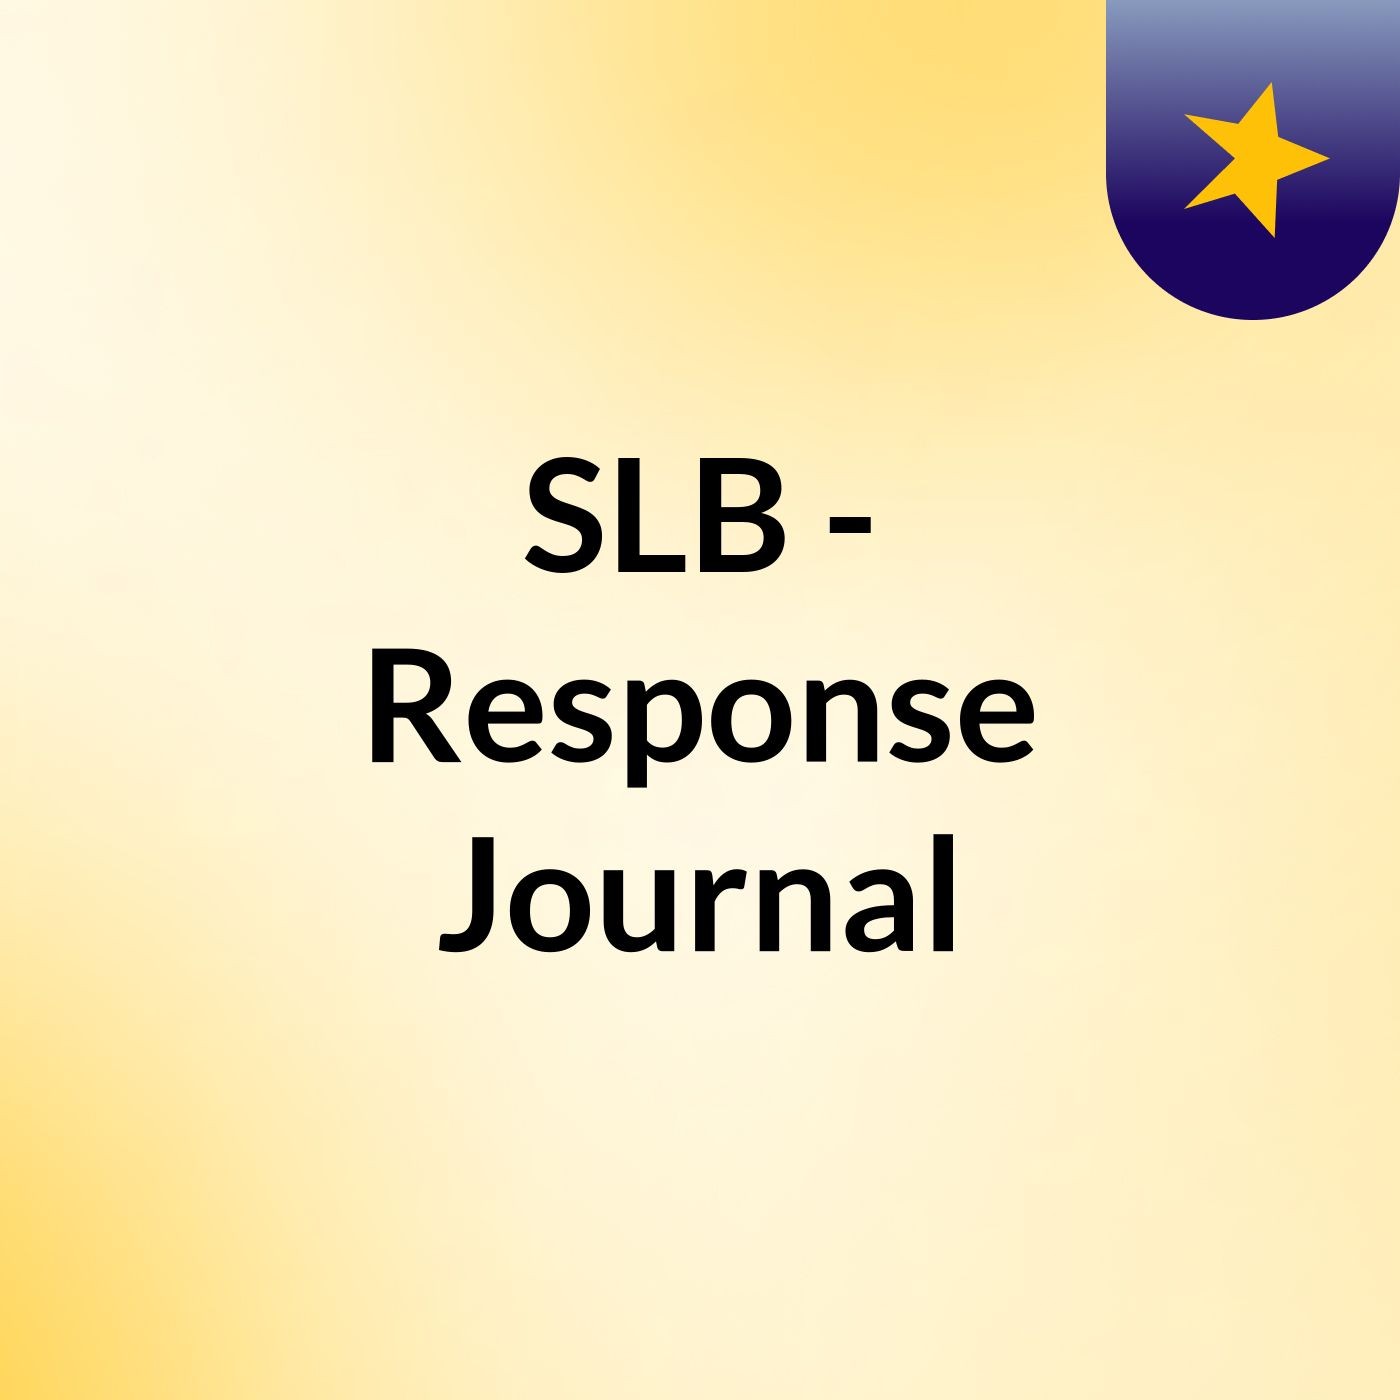 Episode 7 - SLB - Response Journal